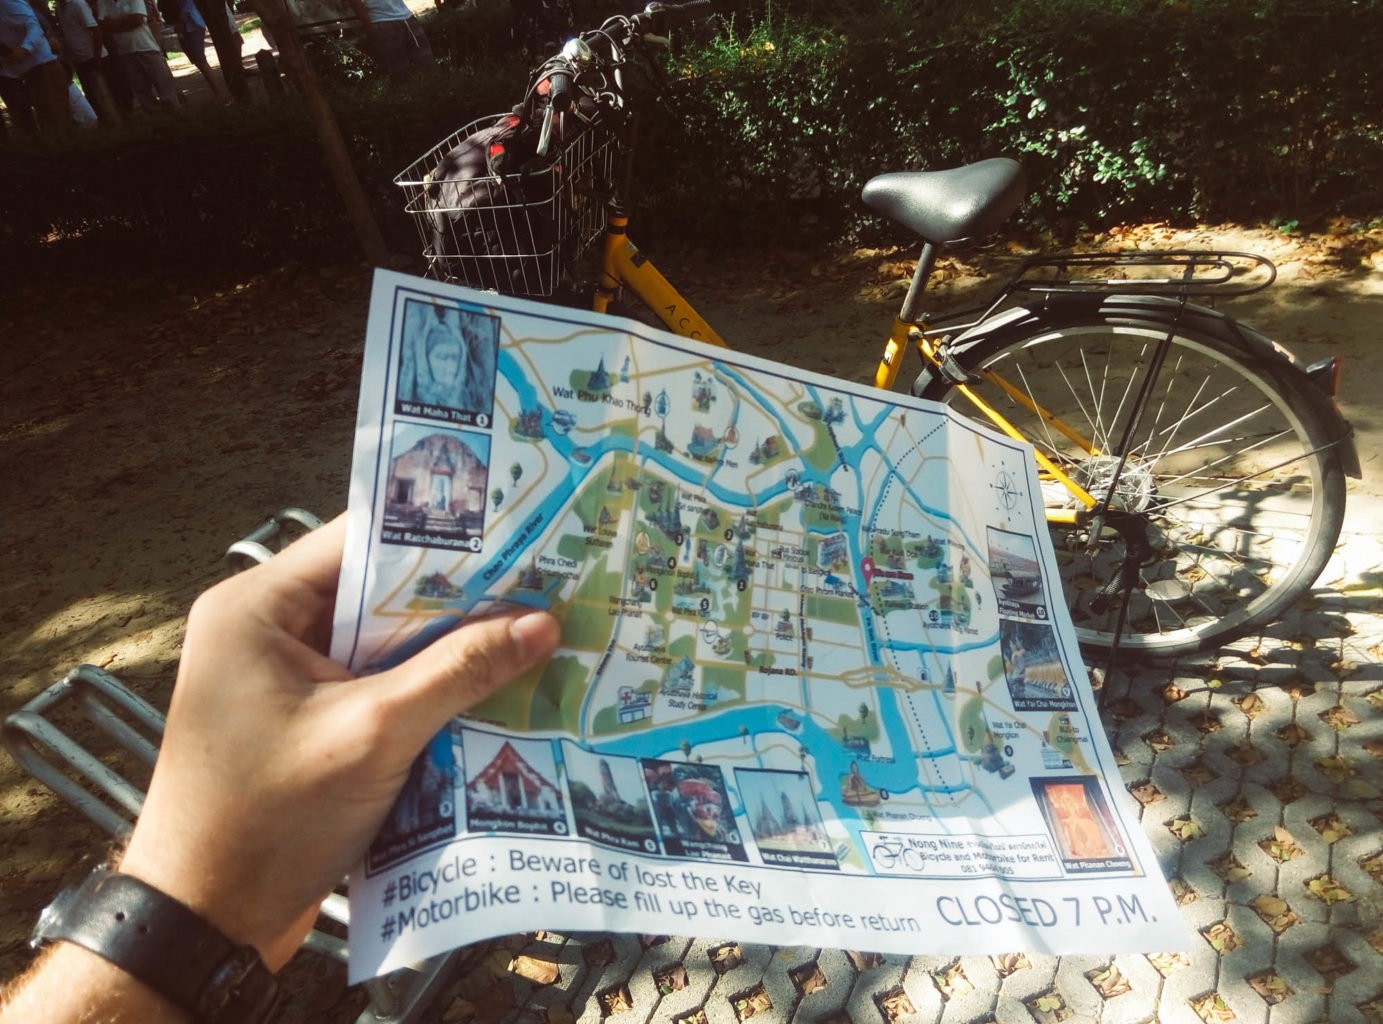 Ayutthaya - Bike rental